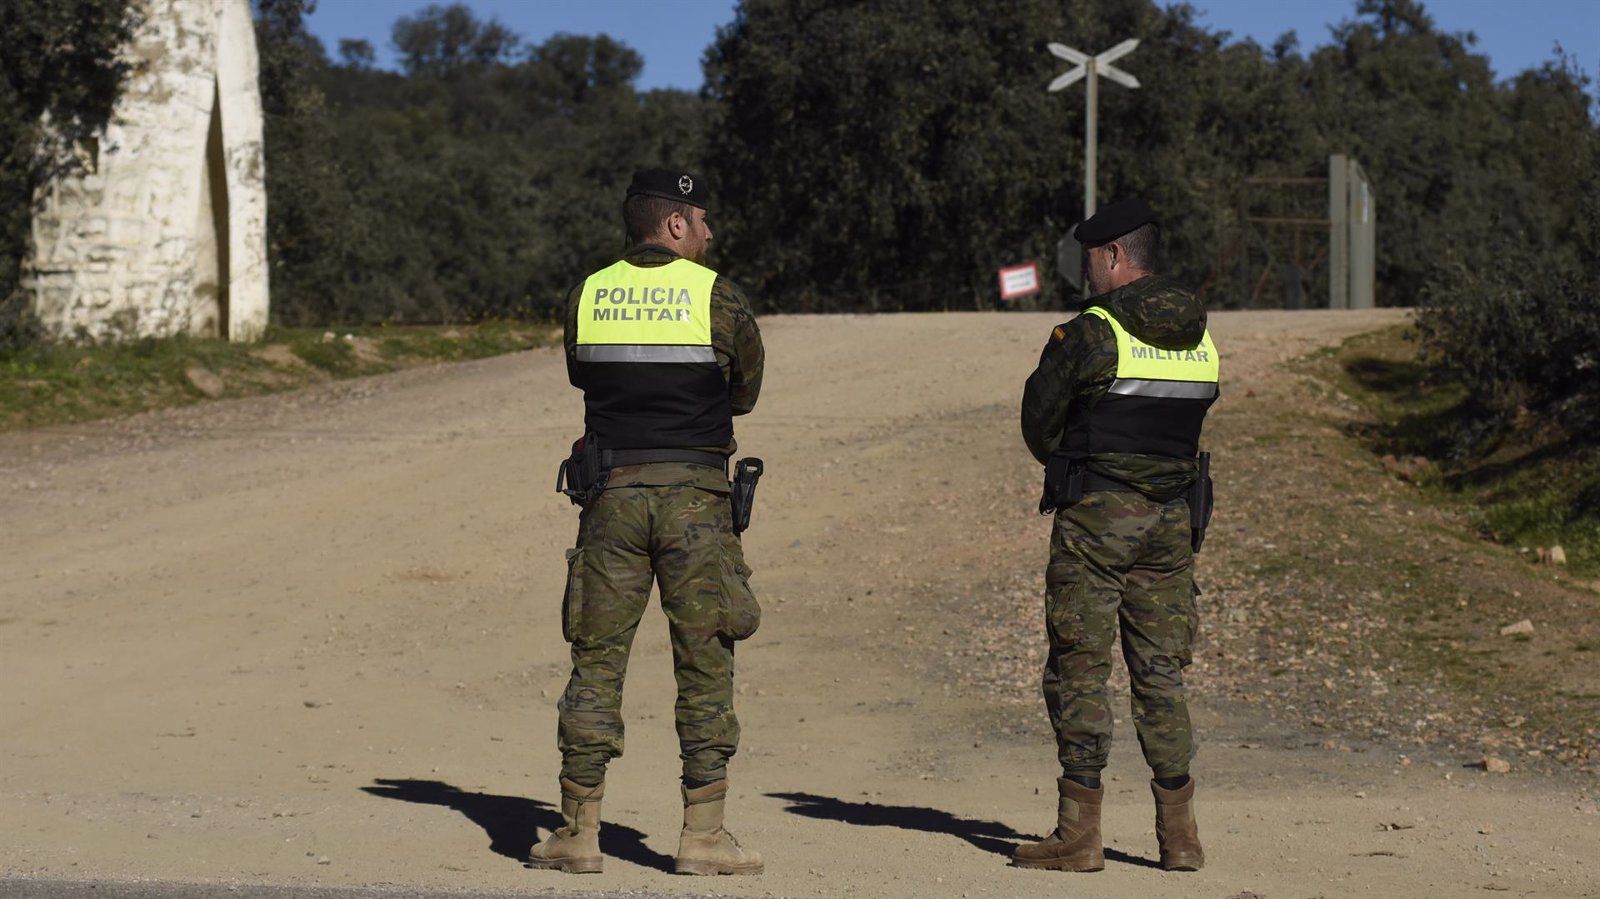 El Ministerio de Defensa destituye al capitán responsable de los ejercicios donde fallecieron dos militares en Cerro Muriano (Córdoba)